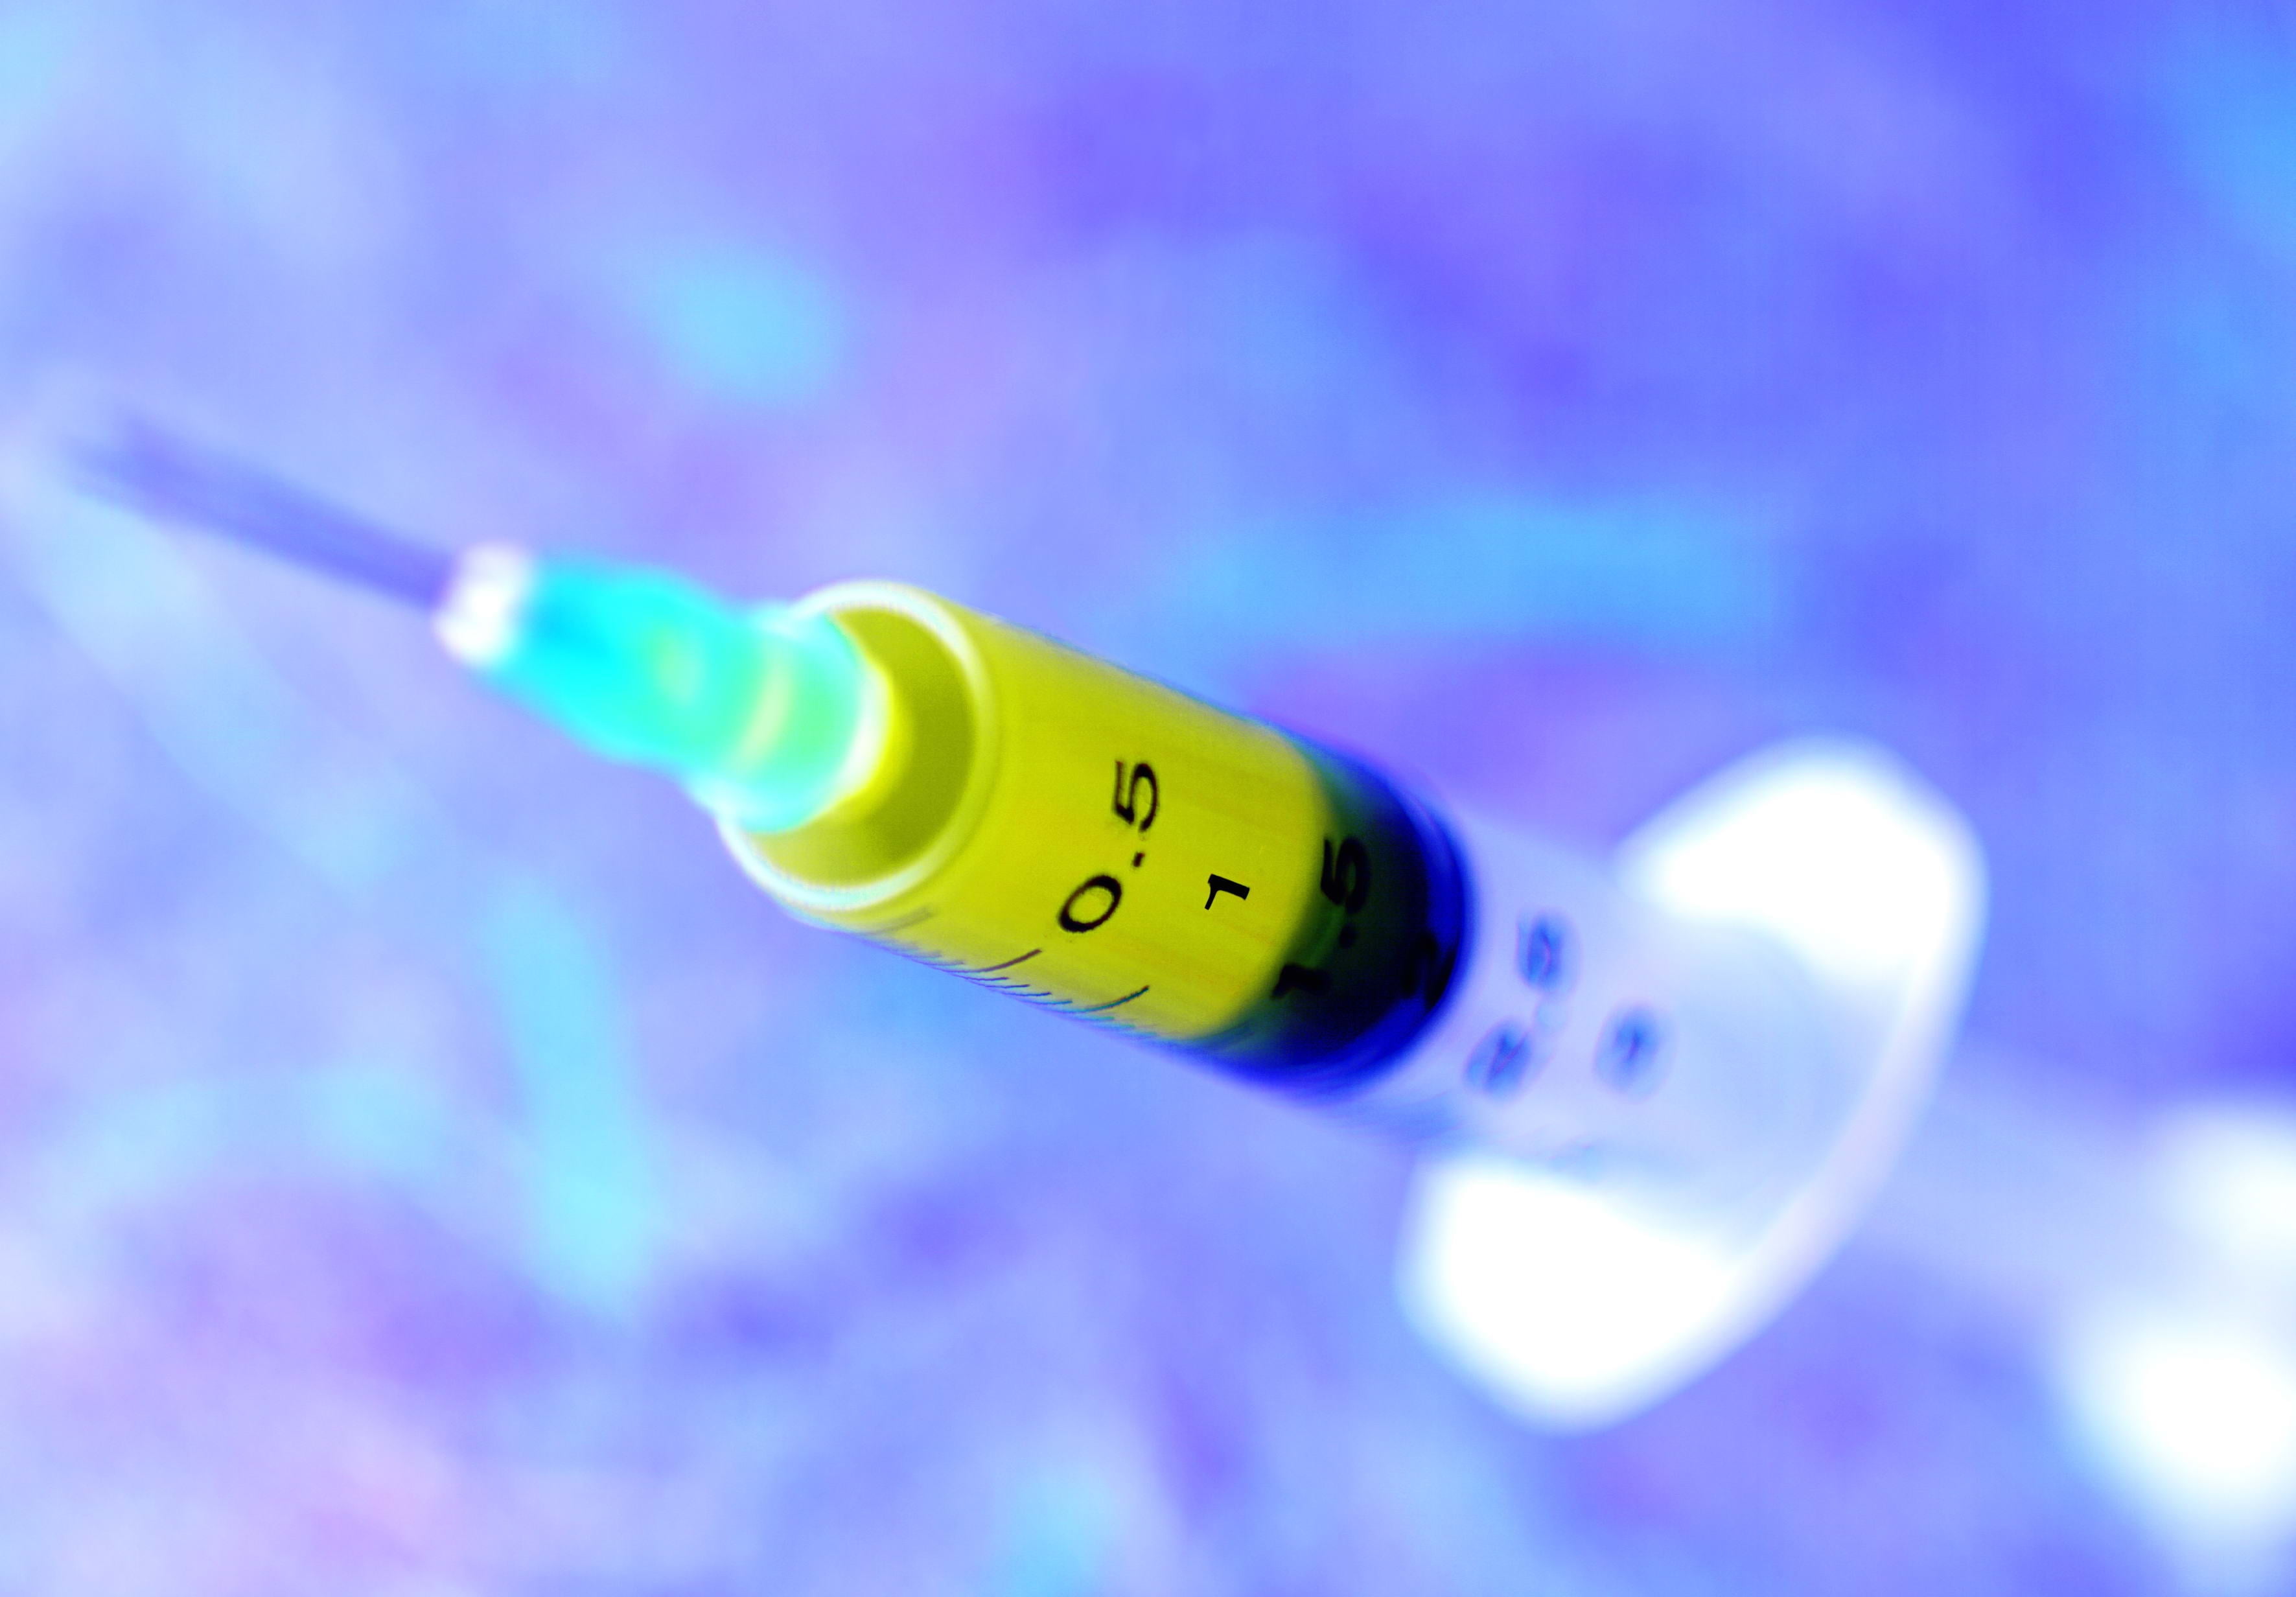 close-up photography of syringe